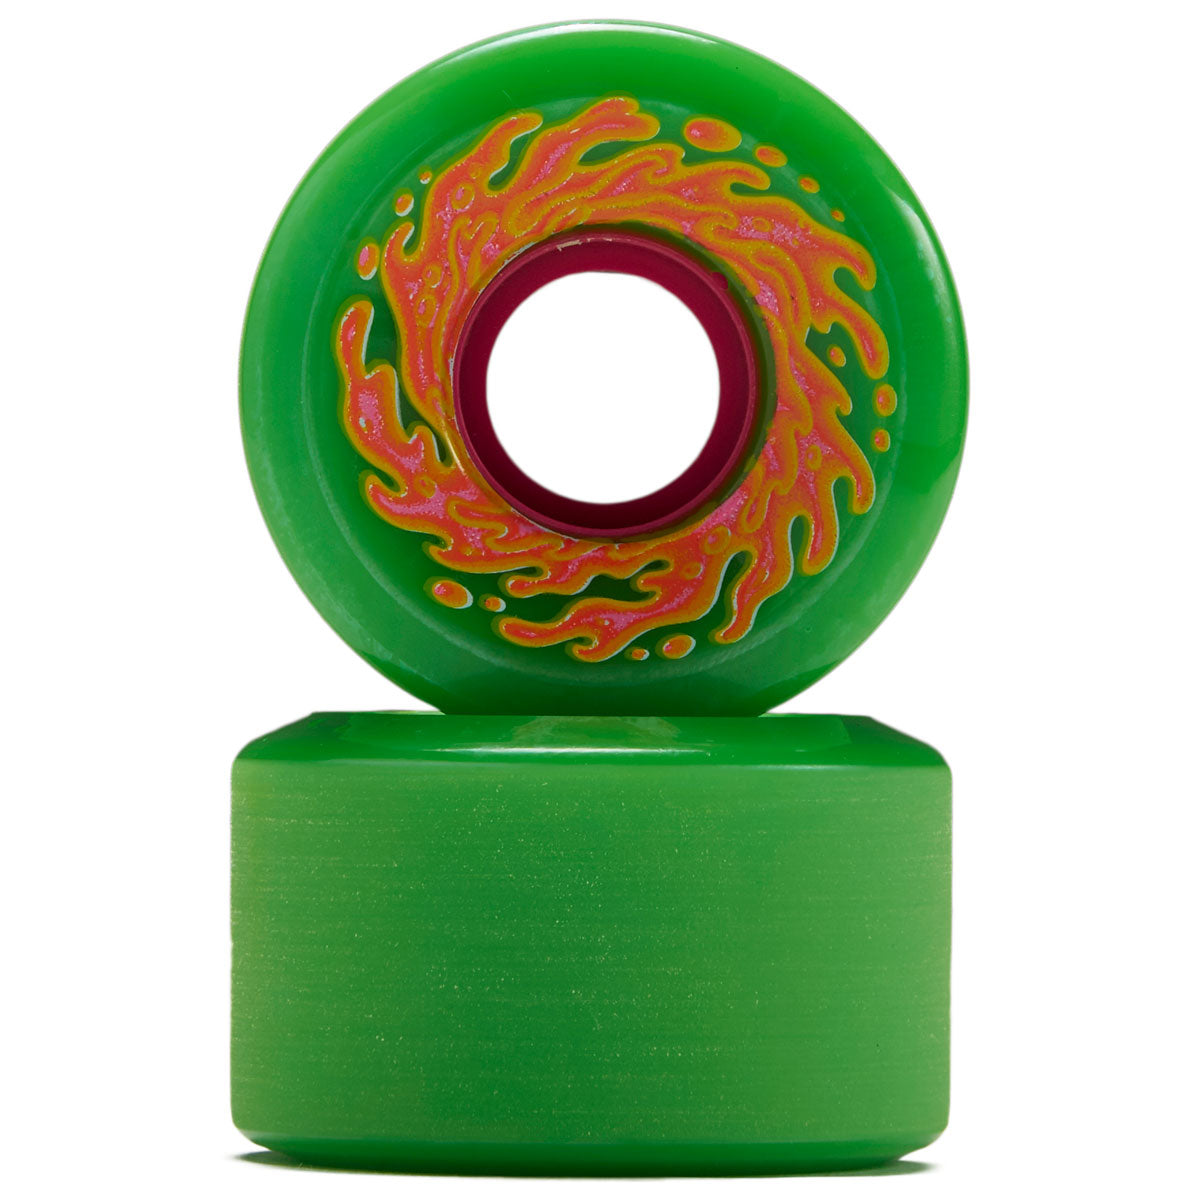 Slime Balls OG Slime 78a Skateboard Wheels - Green/Pink - 54.5mm image 2